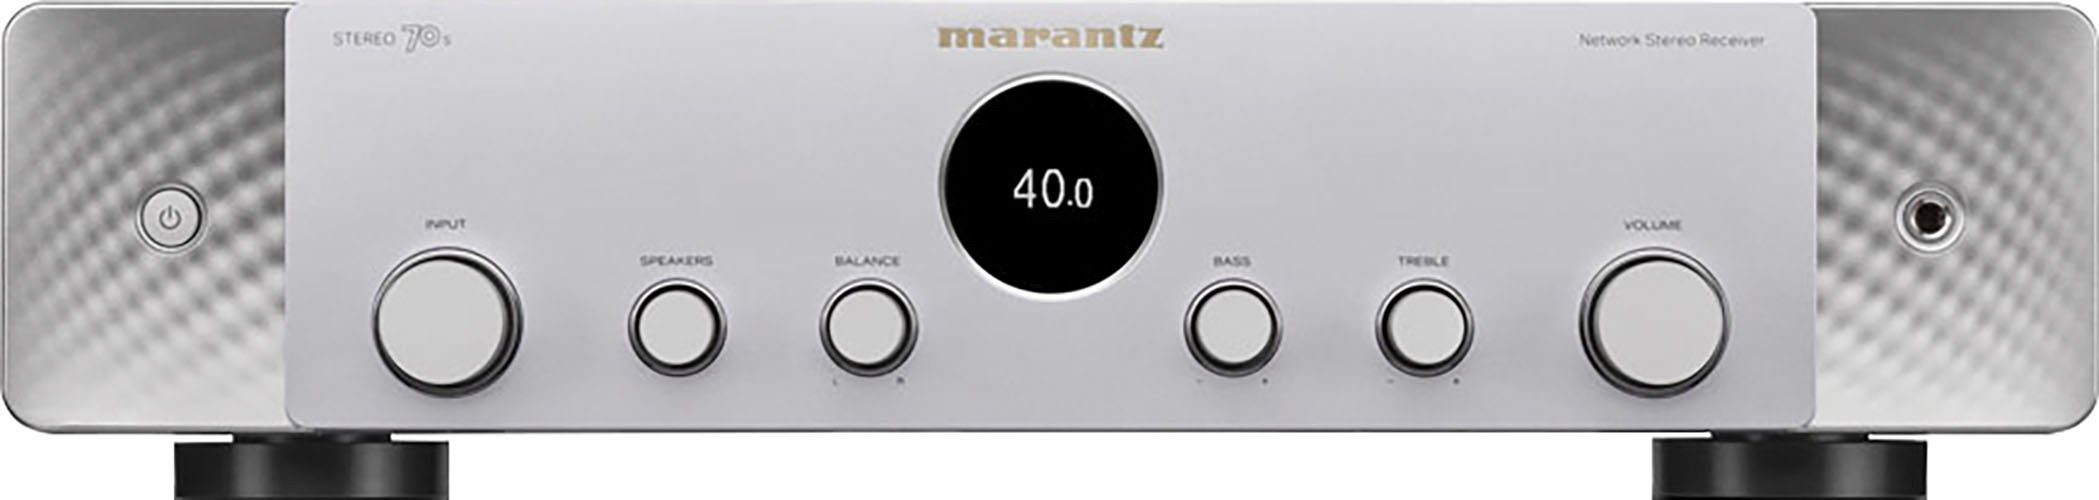 70S Stereo (Ethernet), (Bluetooth, AV-Receiver WLAN) Silber/Gold Marantz LAN 2.1